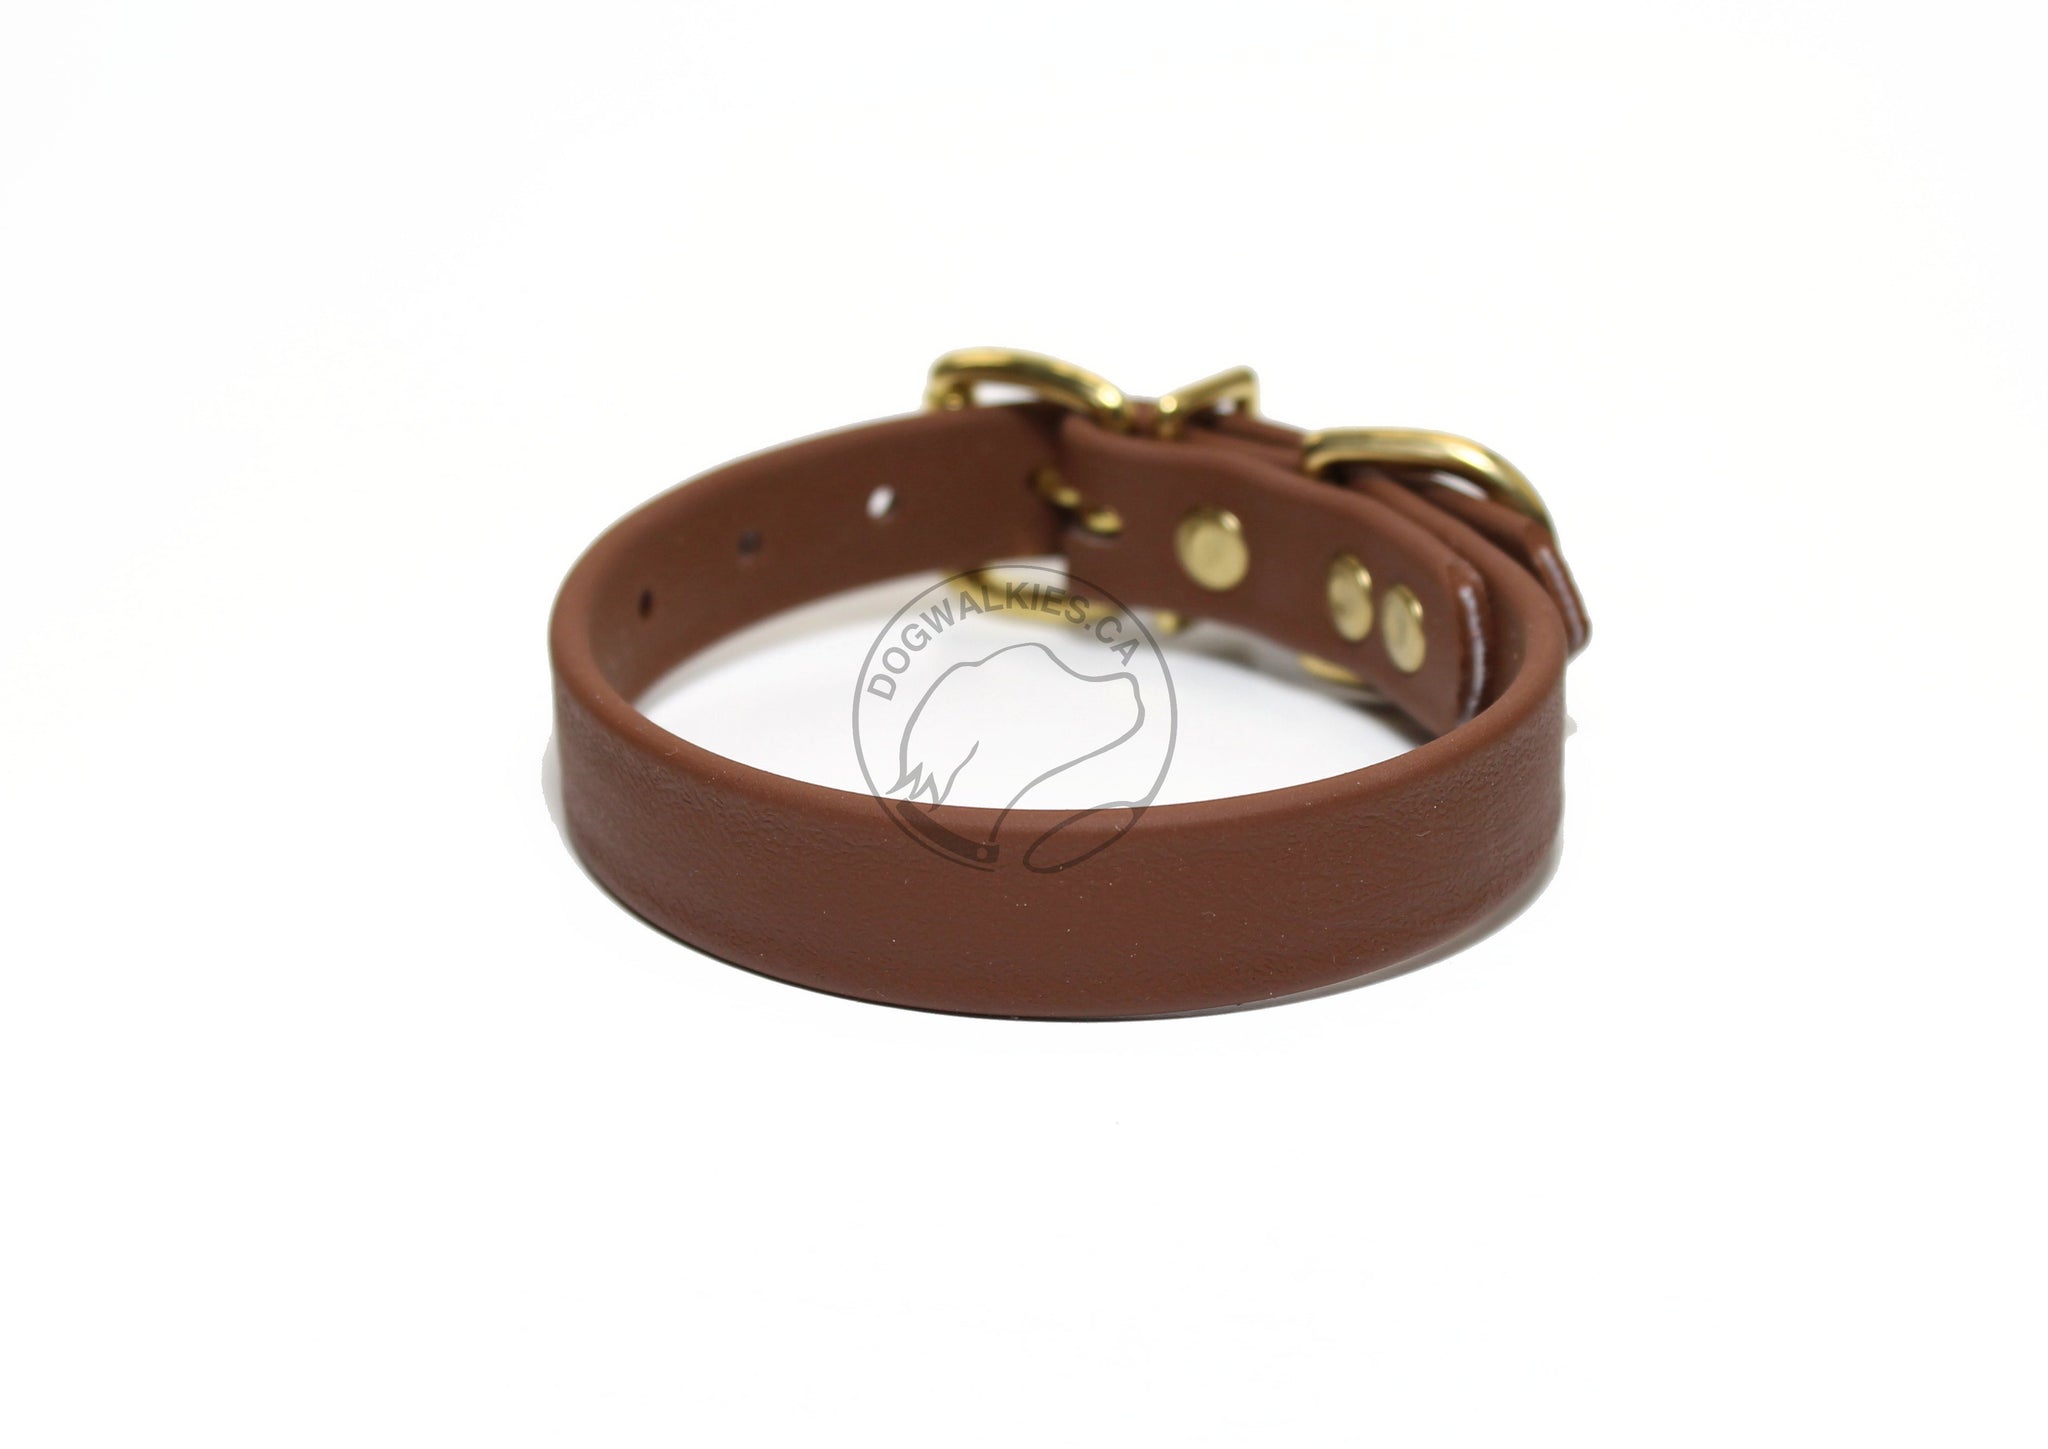 Milk Chocolate Brown Biothane Dog Collar - 3/4" (20mm) wide